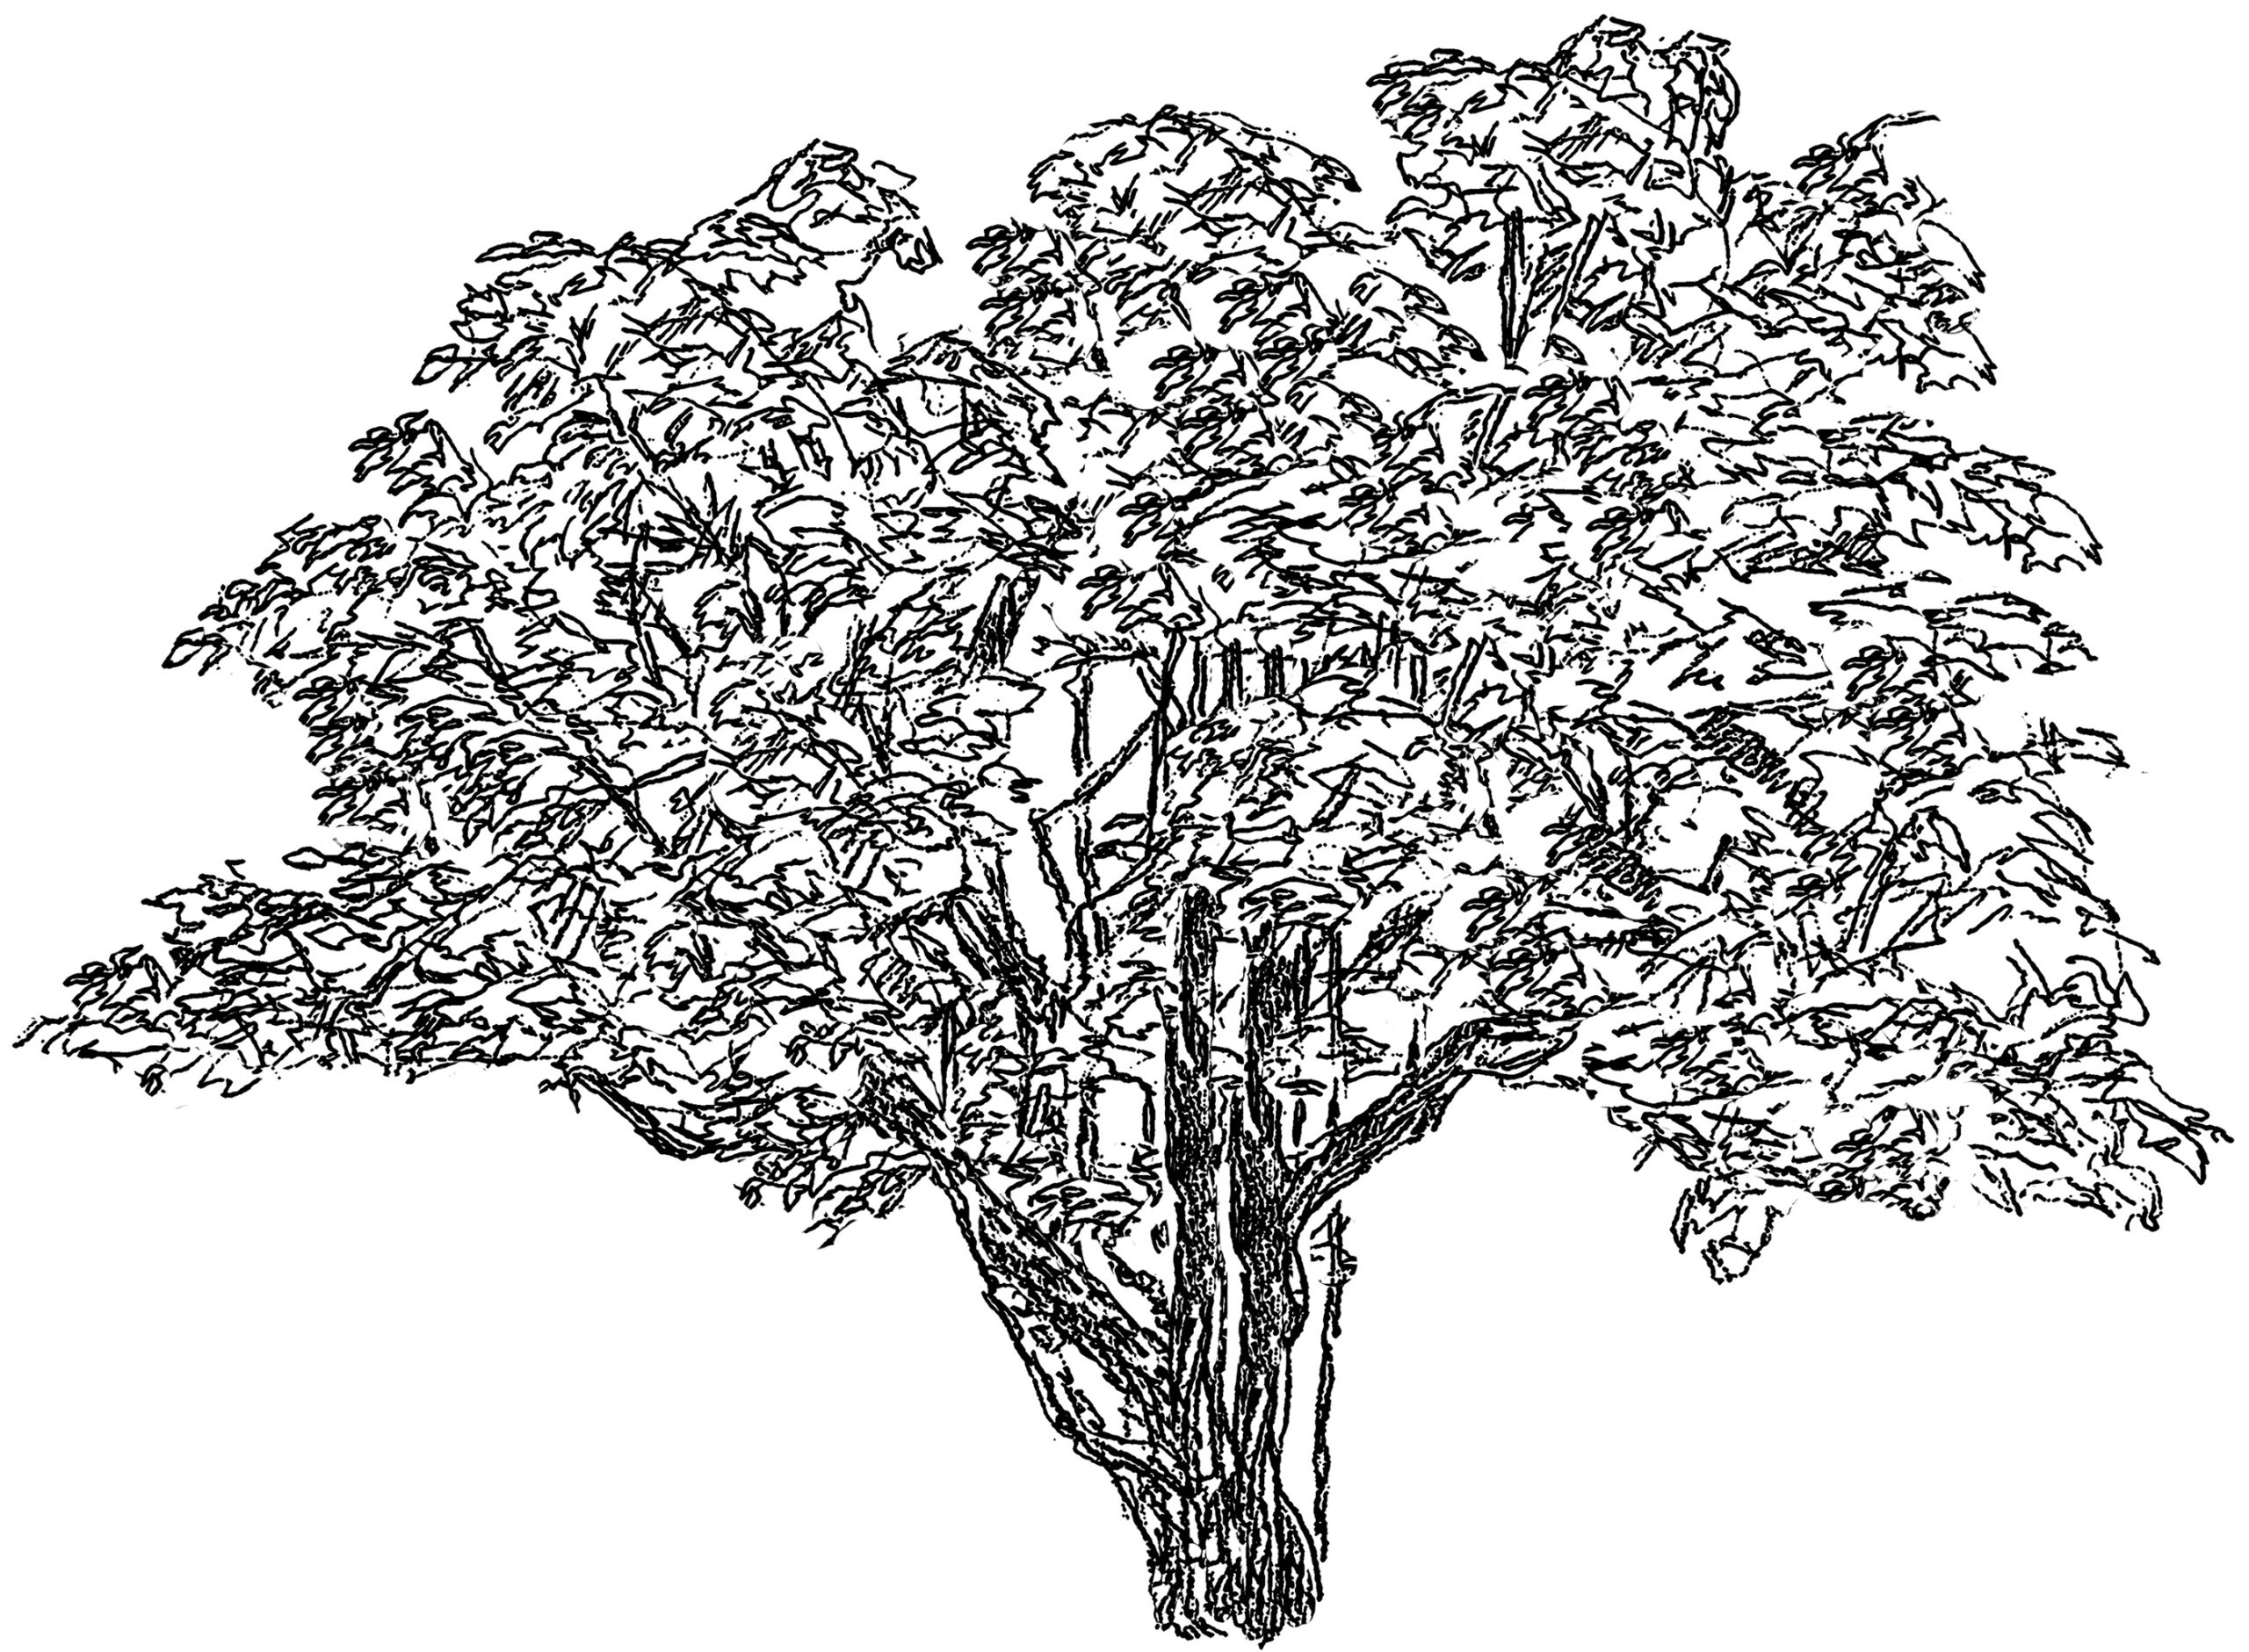 99 - Slangetræ